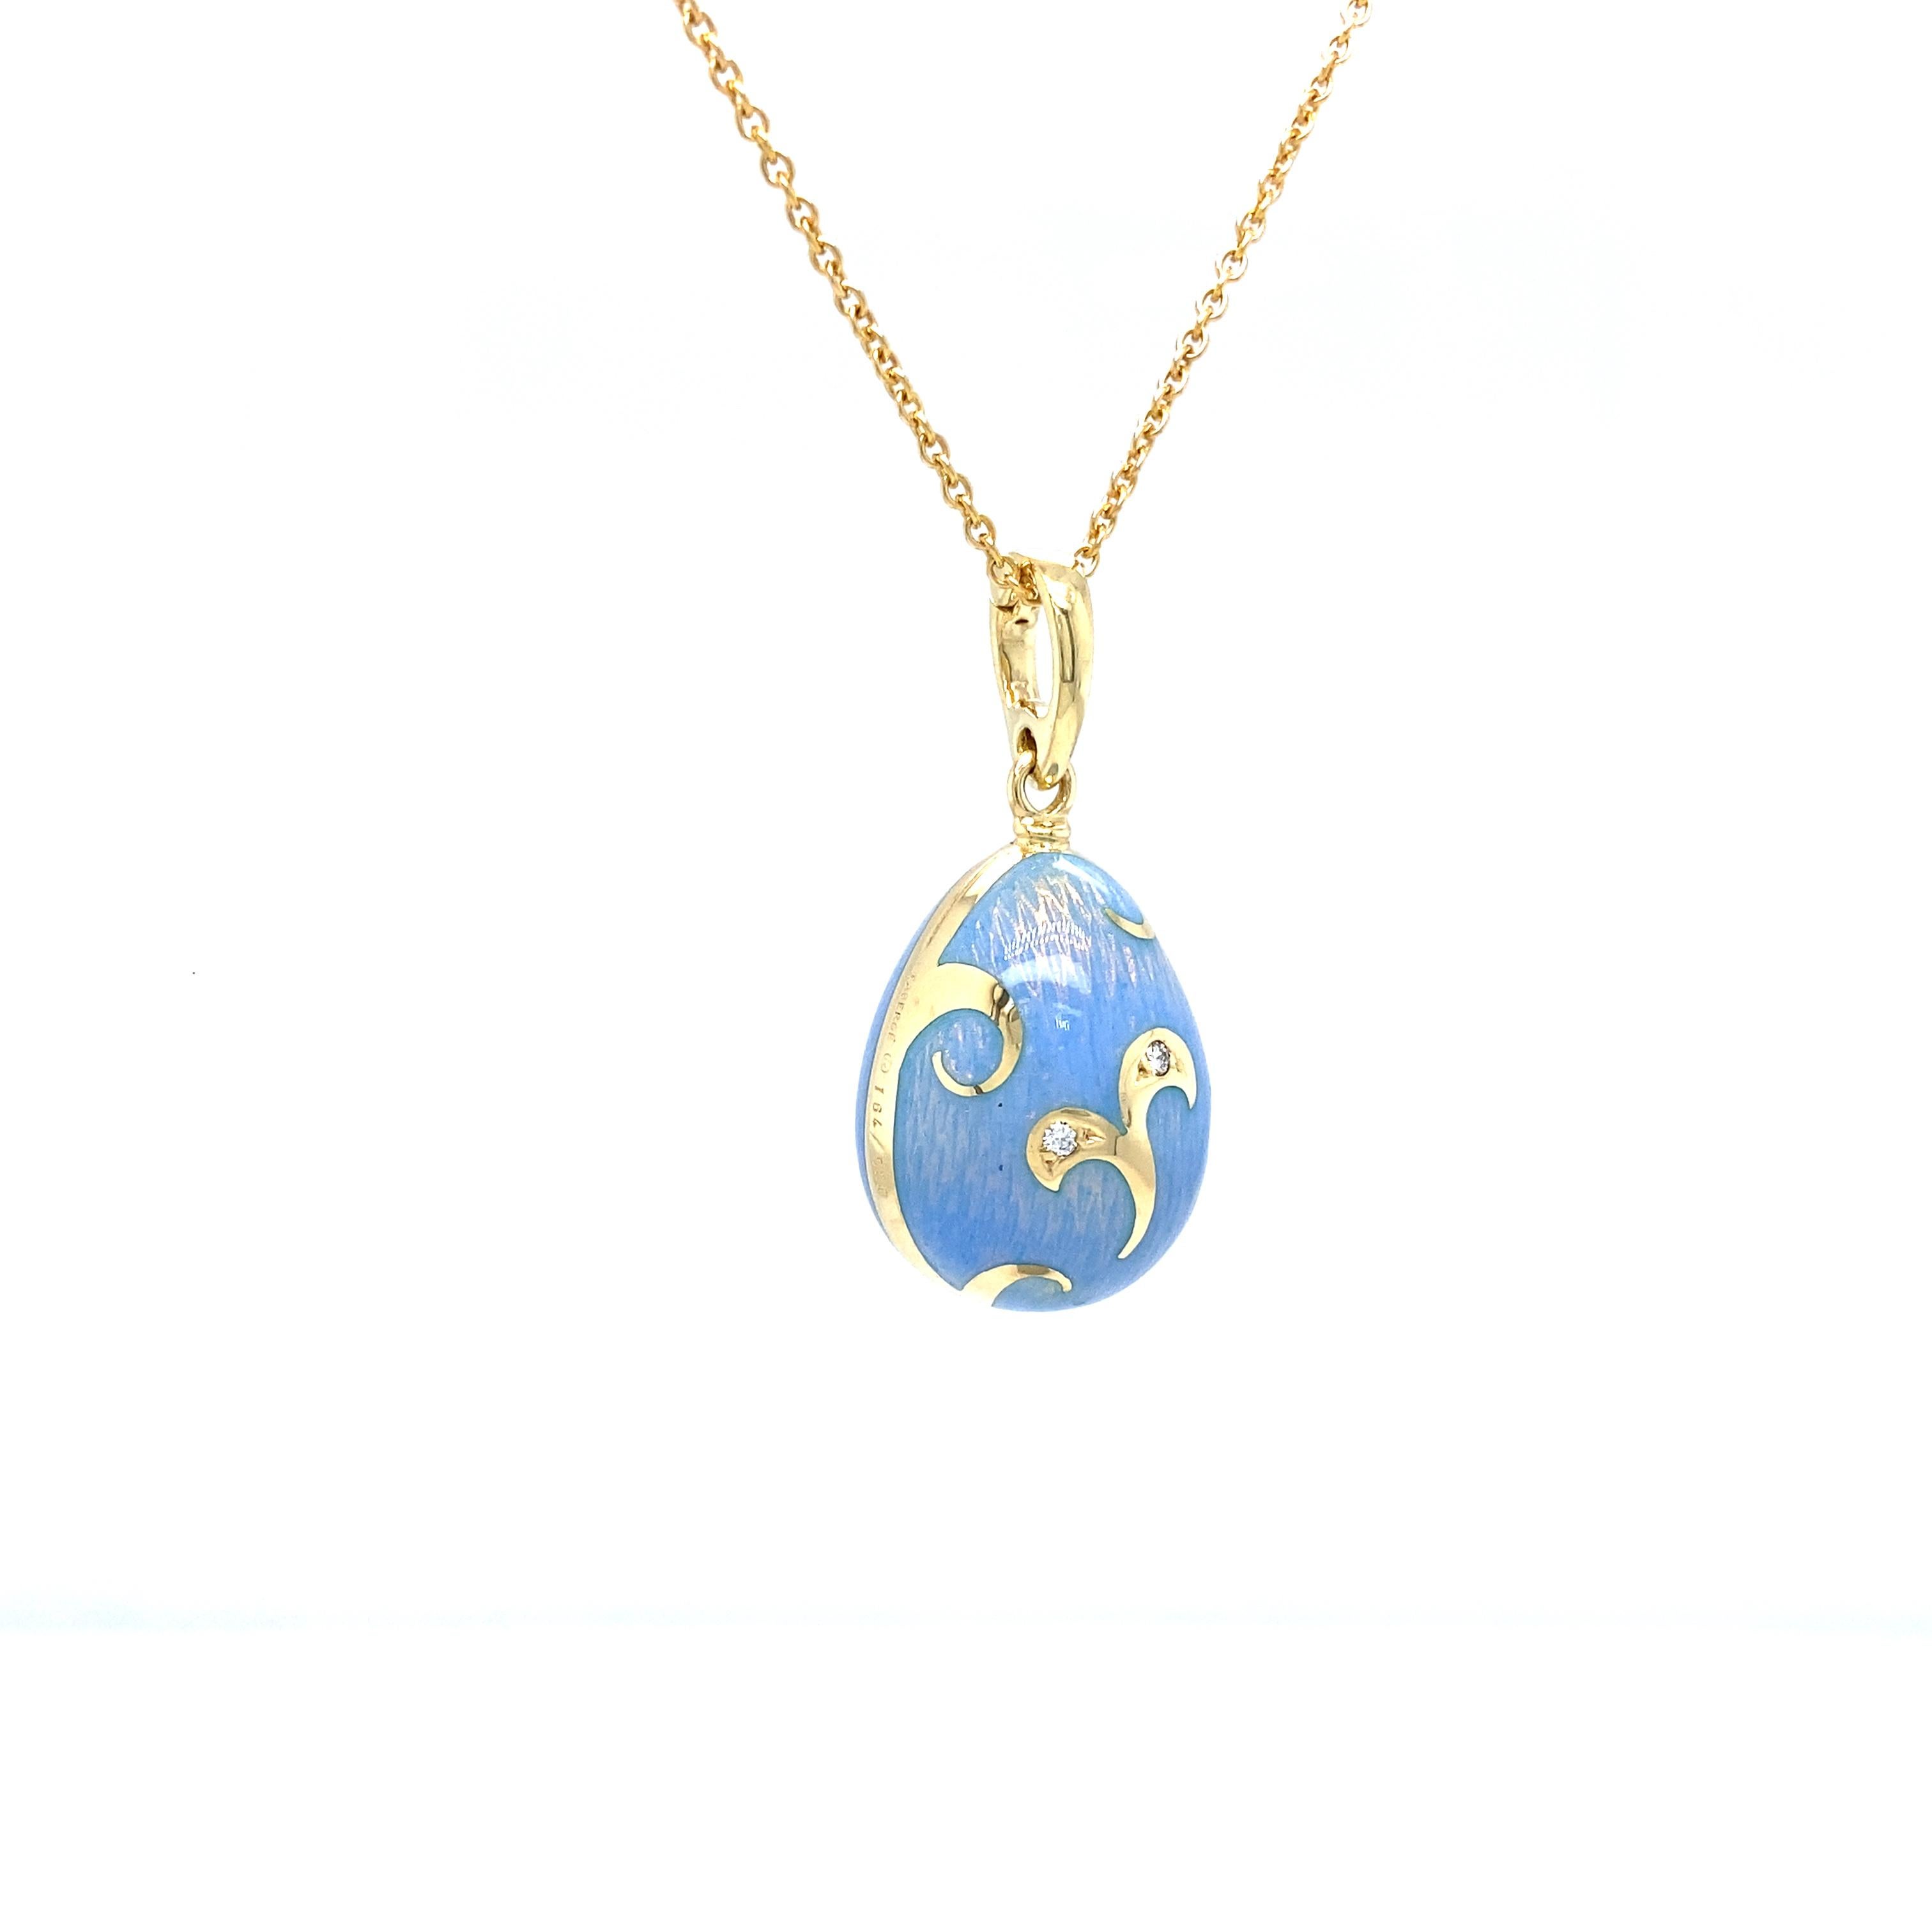 Pendentif en forme d'œuf de Fabergé,  édition limitée, or jaune 18k, bleu clair opalescent translucide, 2 diamants taille brillant 0.02 ct G VS

Référence : F1793/OB/00/00/102
Marque : Faberge
Maître d'œuvre : Victor Mayer
Inspiration du design :